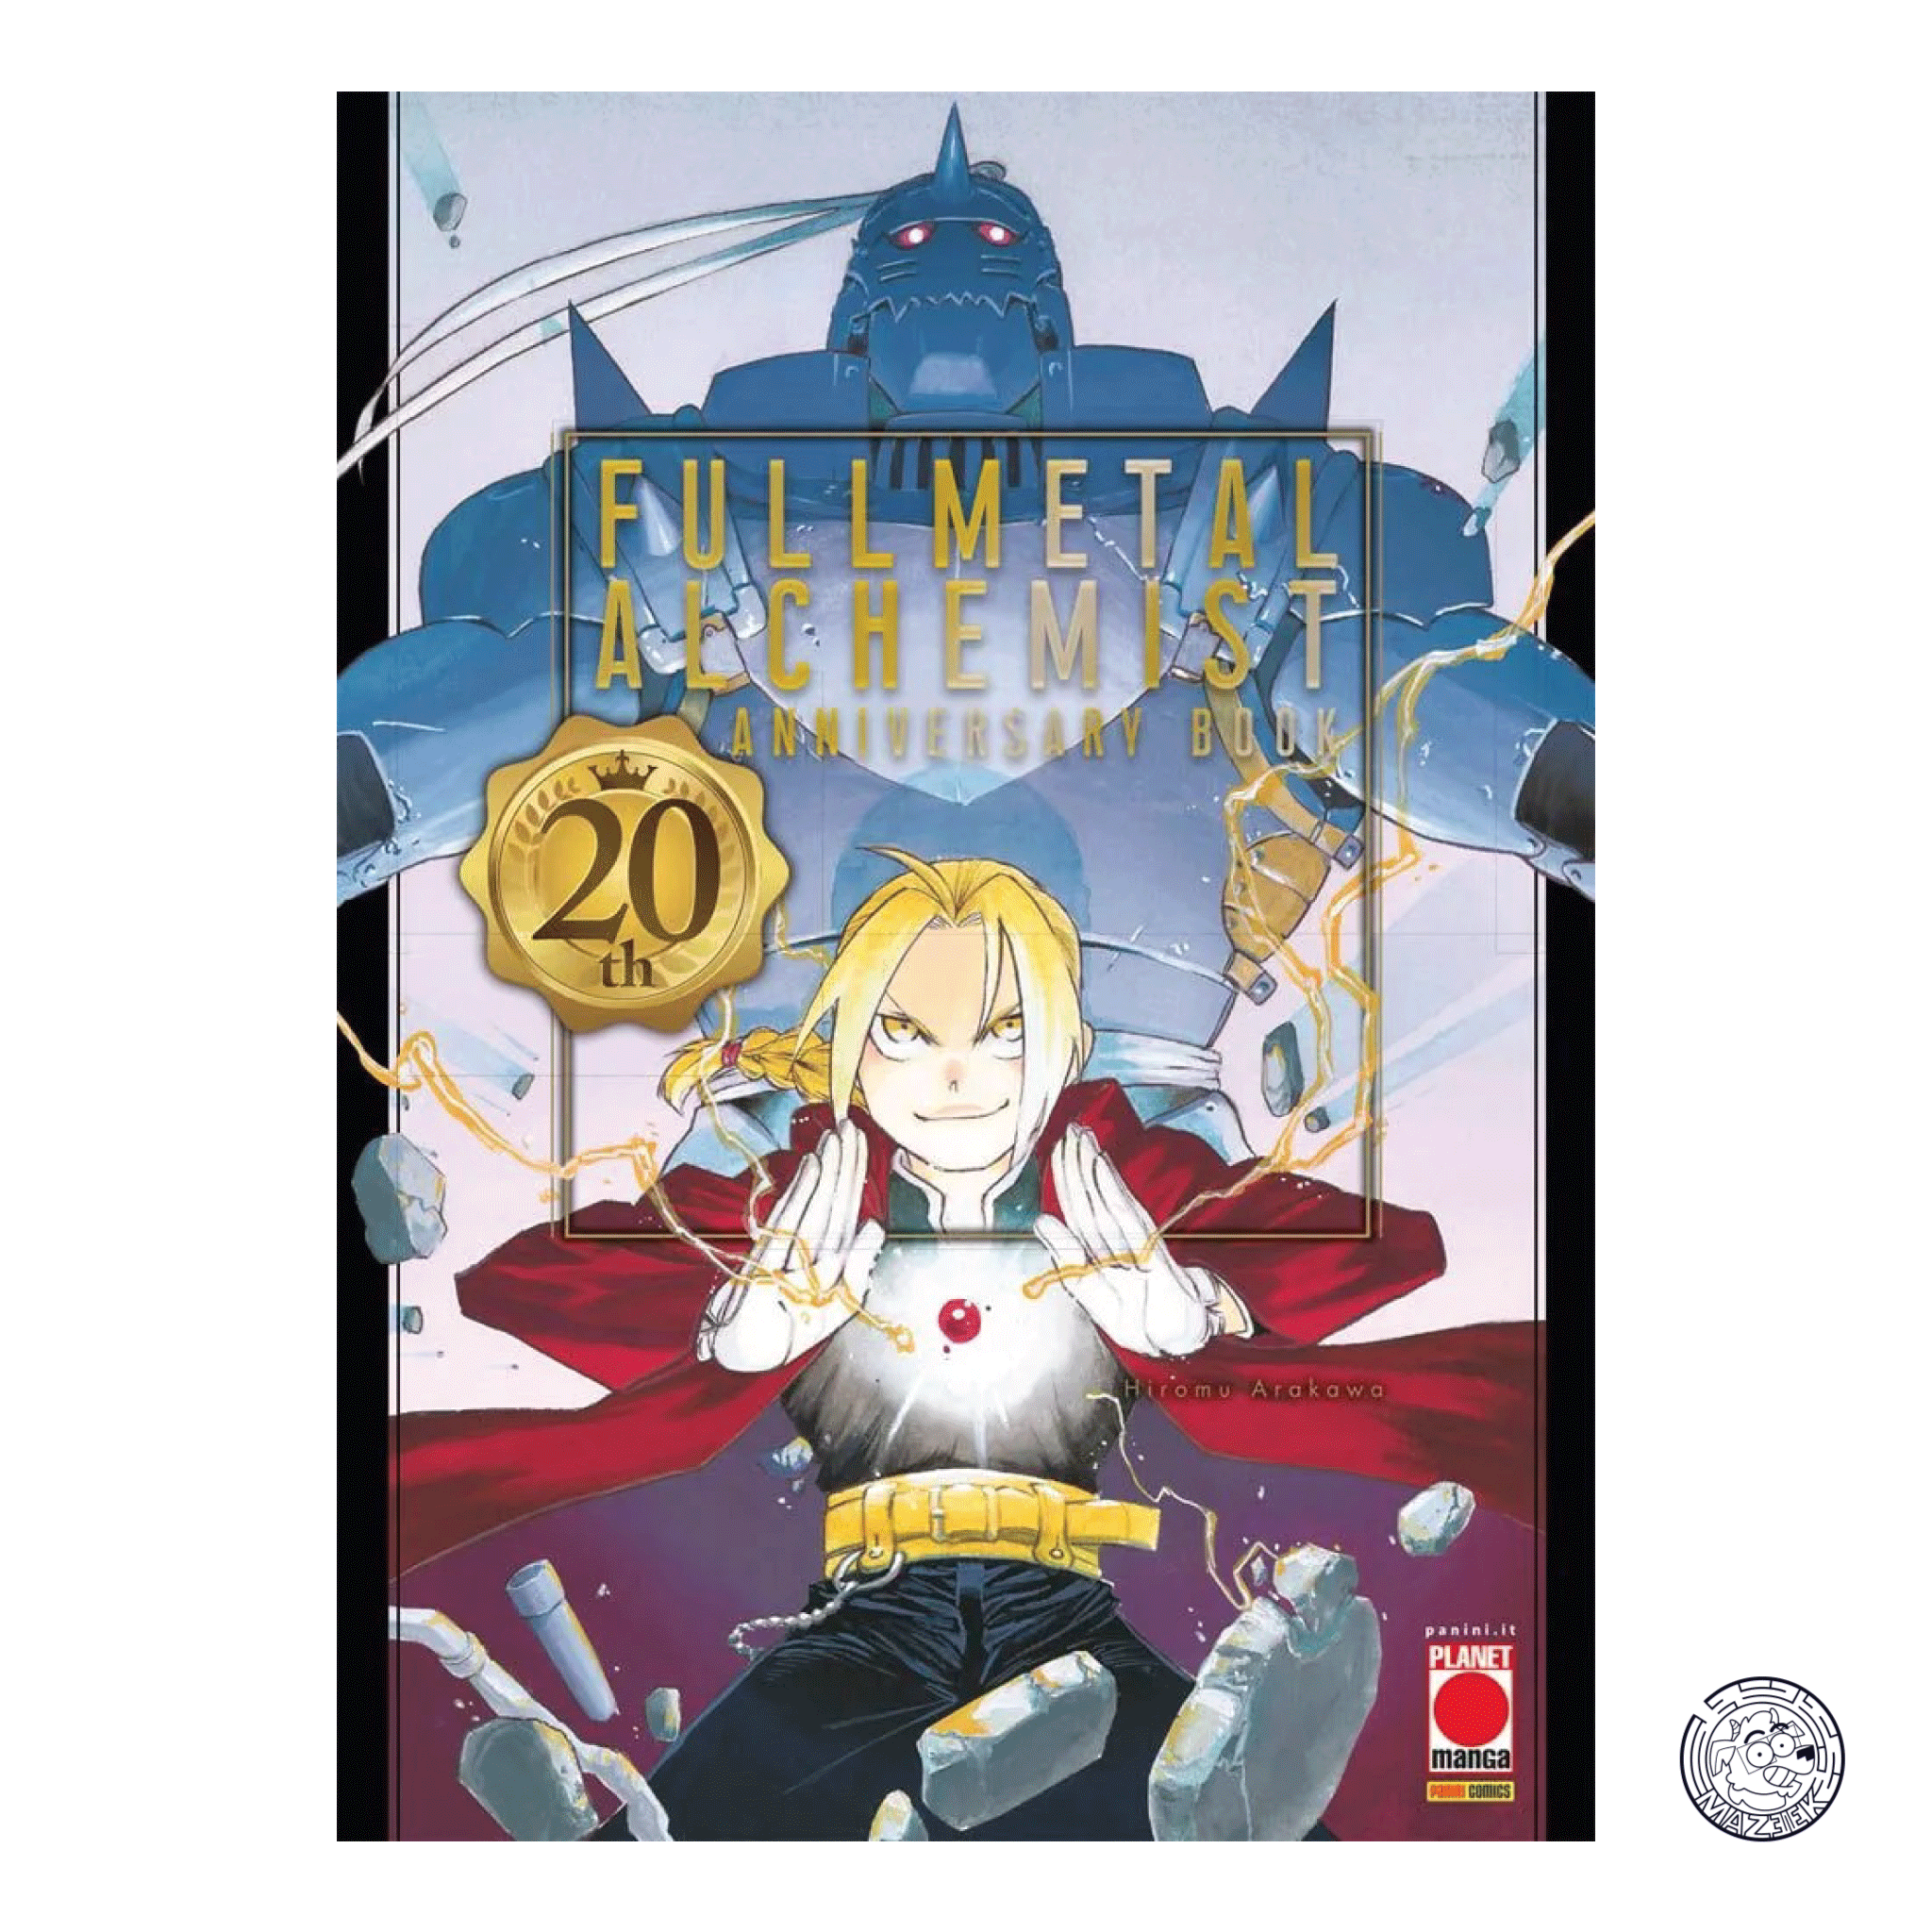 Fullmetal Alchemist – 20th Anniversary Book